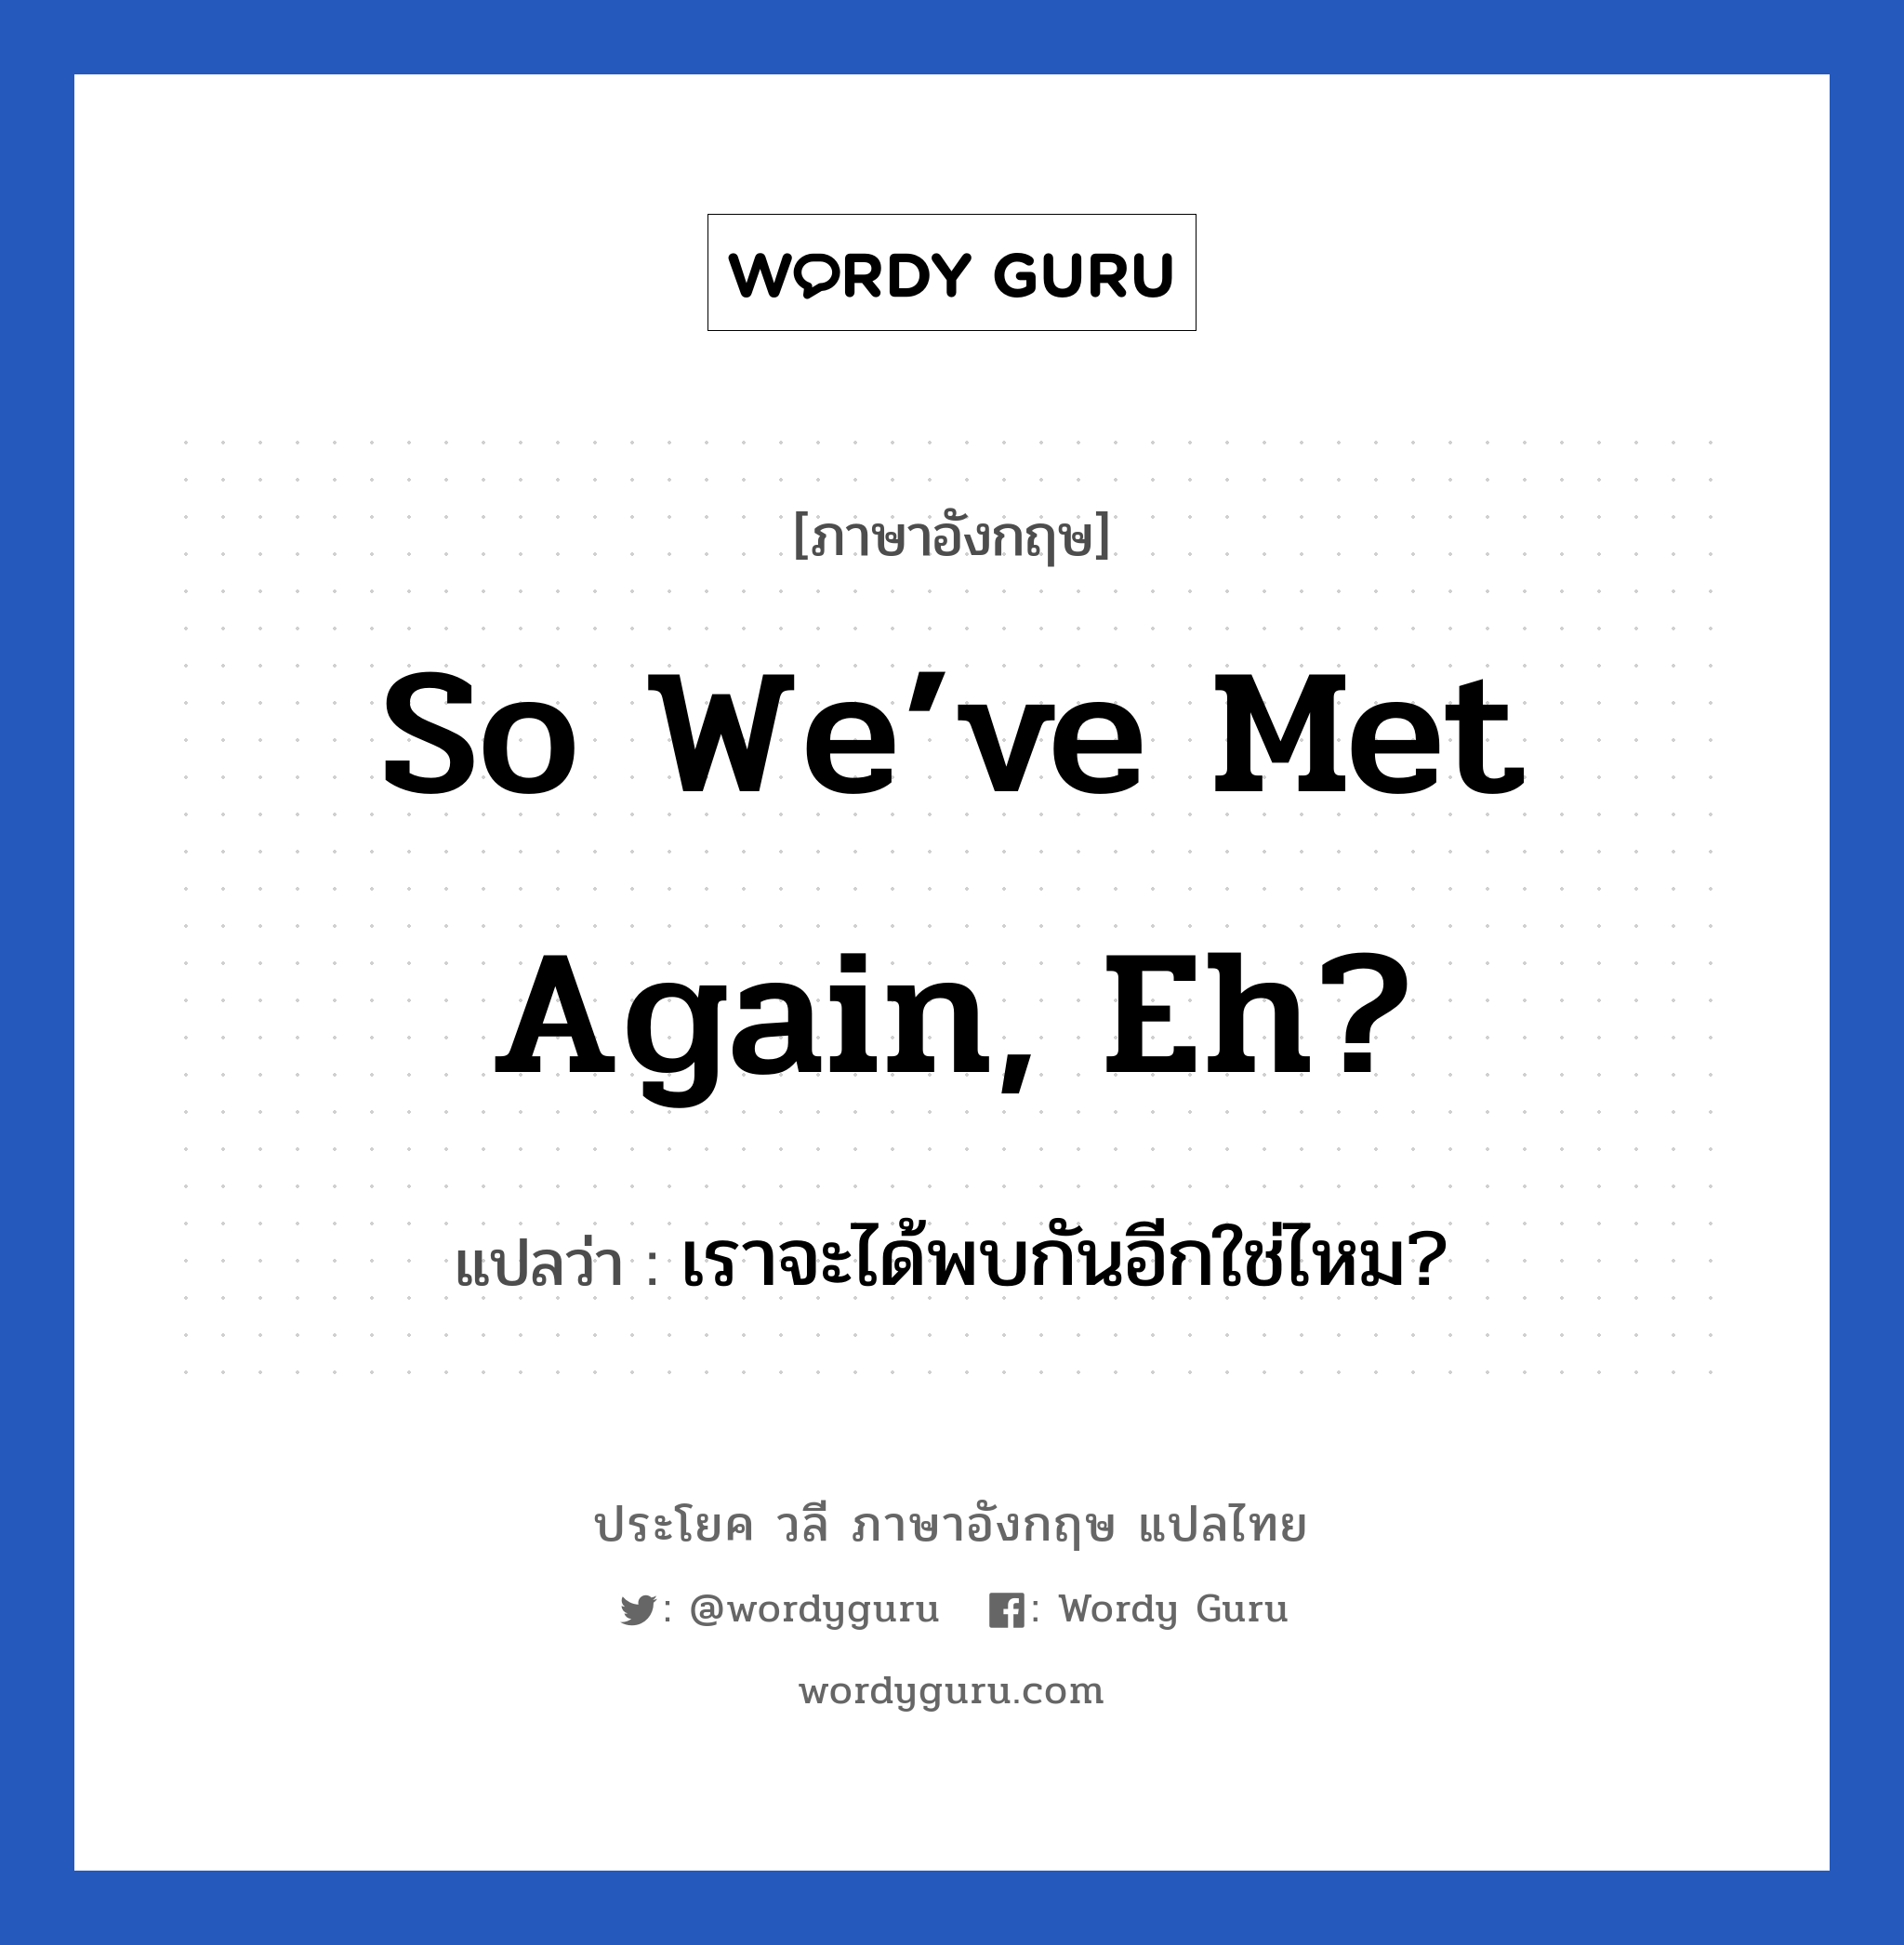 เราจะได้พบกันอีกใช่ไหม? ภาษาอังกฤษ?, วลีภาษาอังกฤษ เราจะได้พบกันอีกใช่ไหม? แปลว่า So we’ve met again, eh?